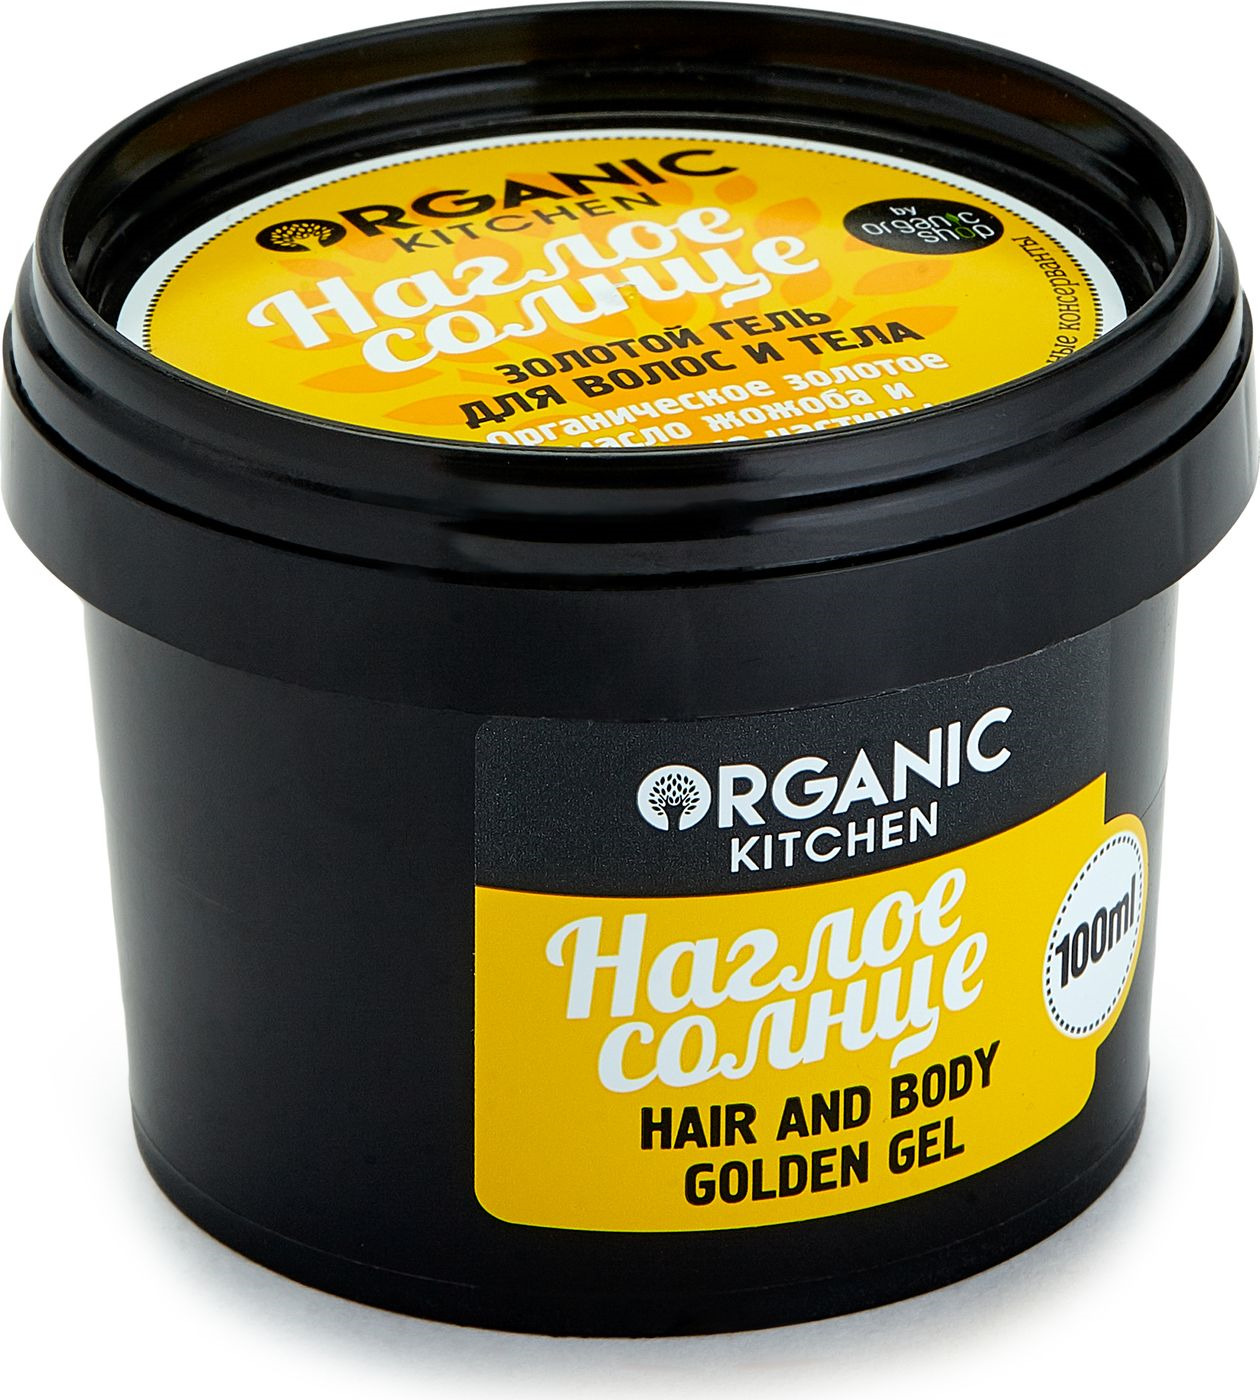 фото Органик Шоп Китчен Золотой Гель для волос и тела "Наглое солнце", 100 мл Organic shop